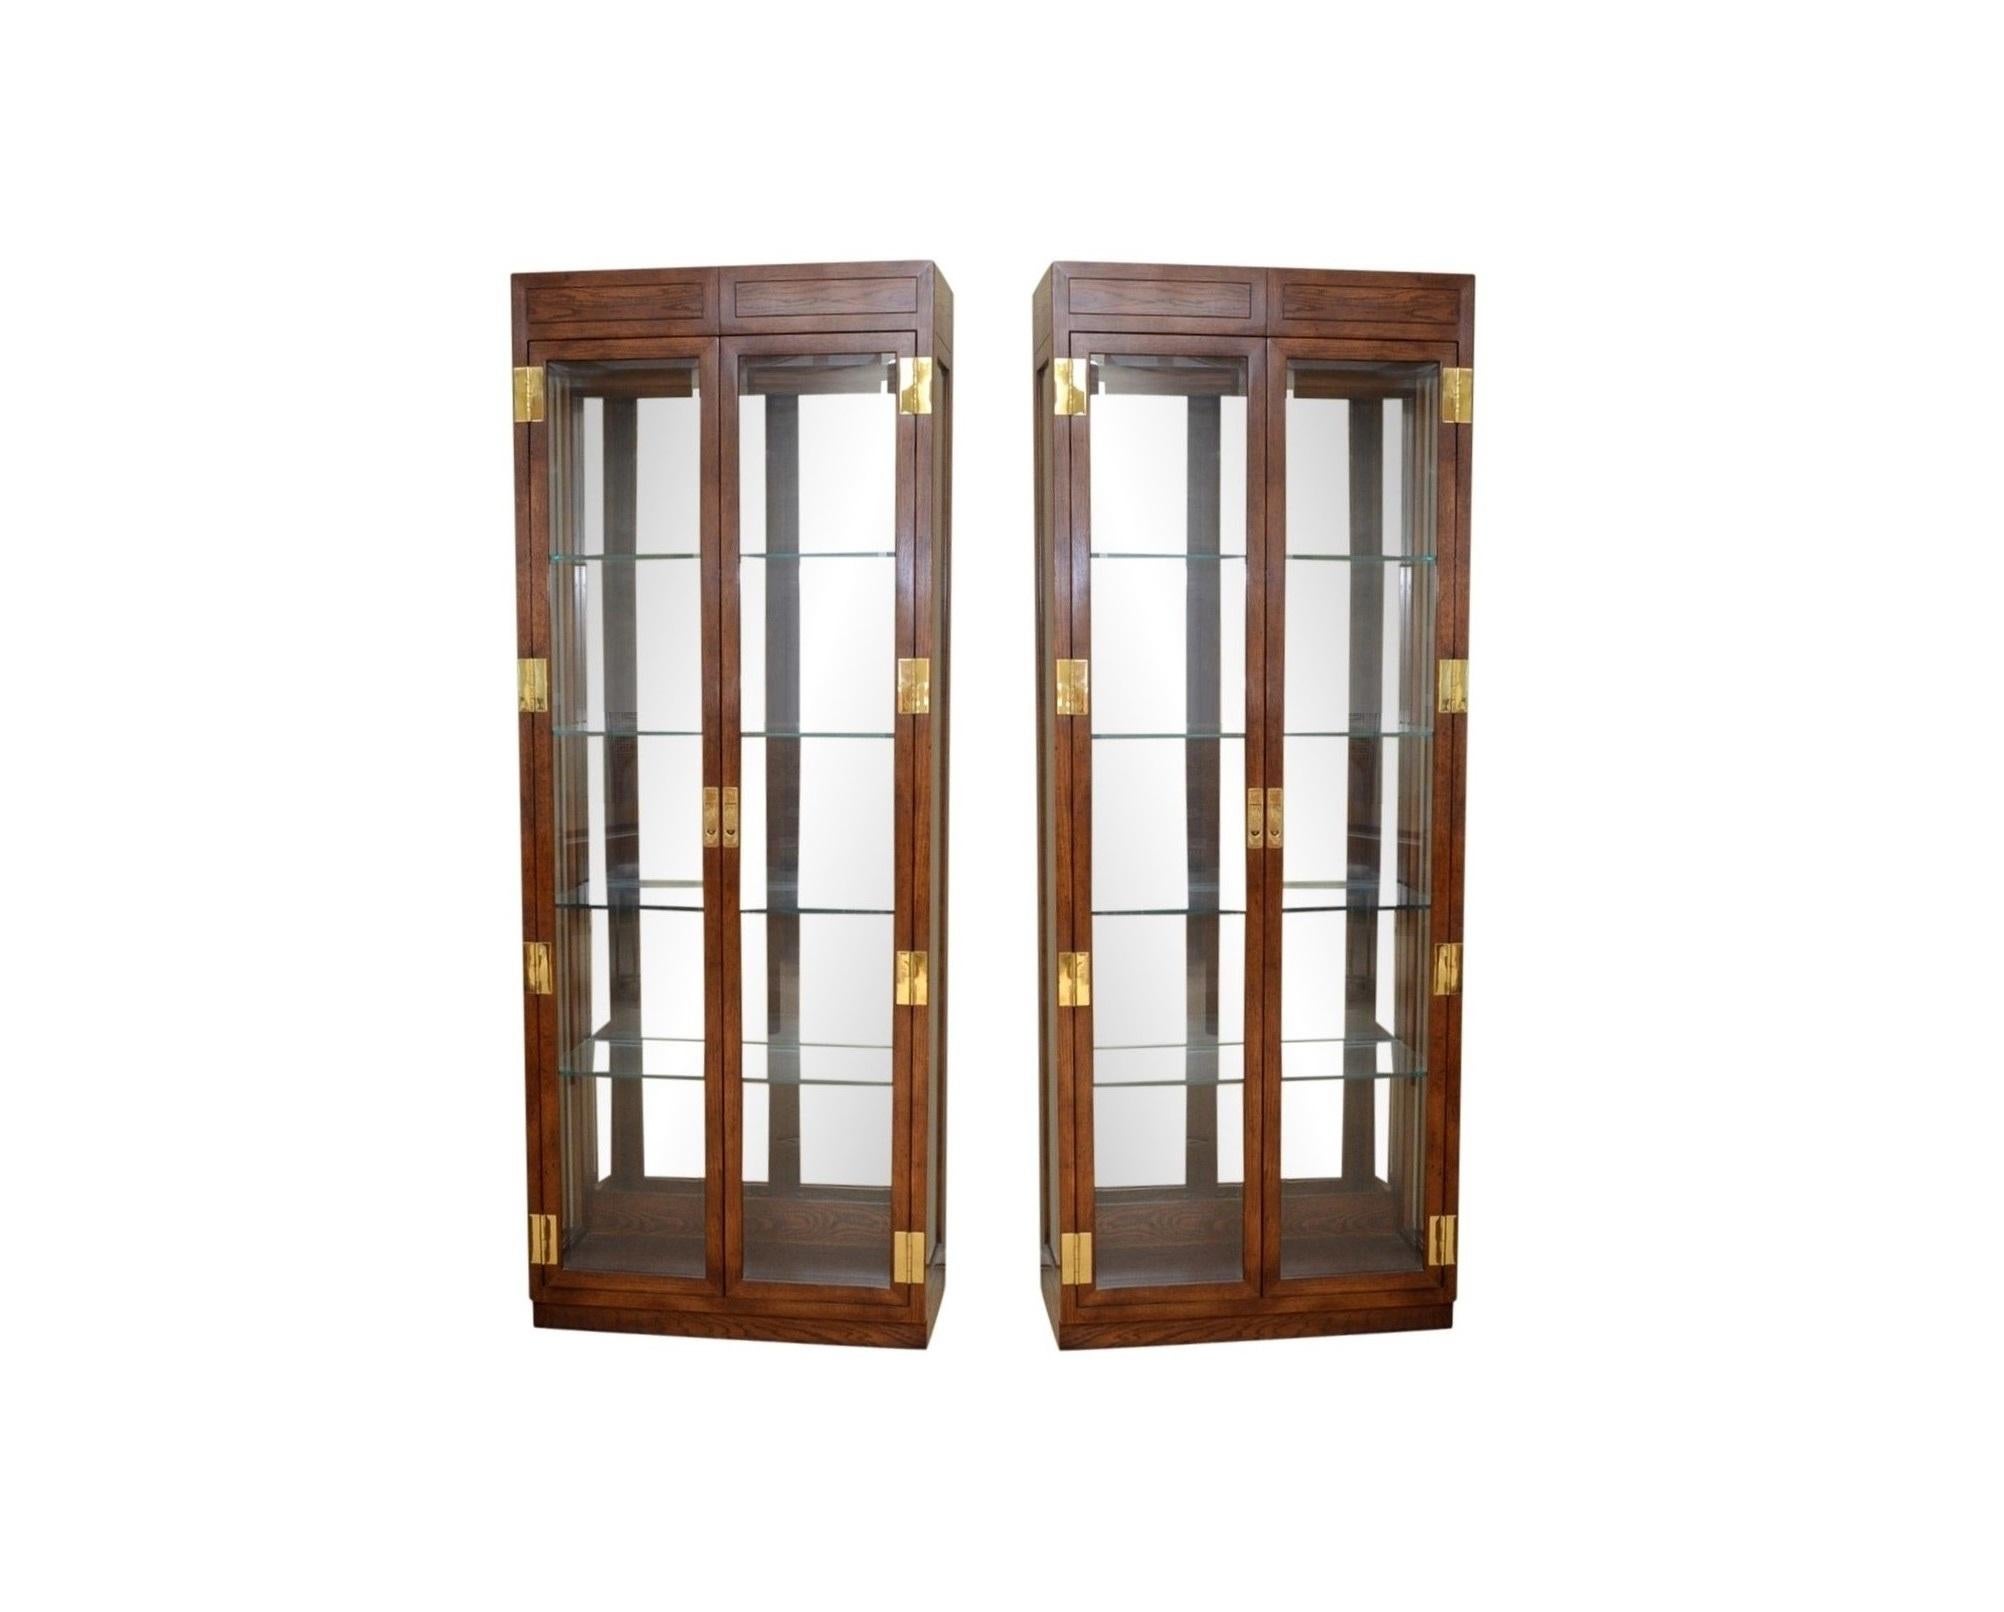 Nous sommes très heureux de vous proposer une superbe paire de vitrines épurées et minimalistes fabriquées par le célèbre fabricant de meubles Henredon, made in USA. Fait partie de la Collection Scene One de Henredon, datant du début des années